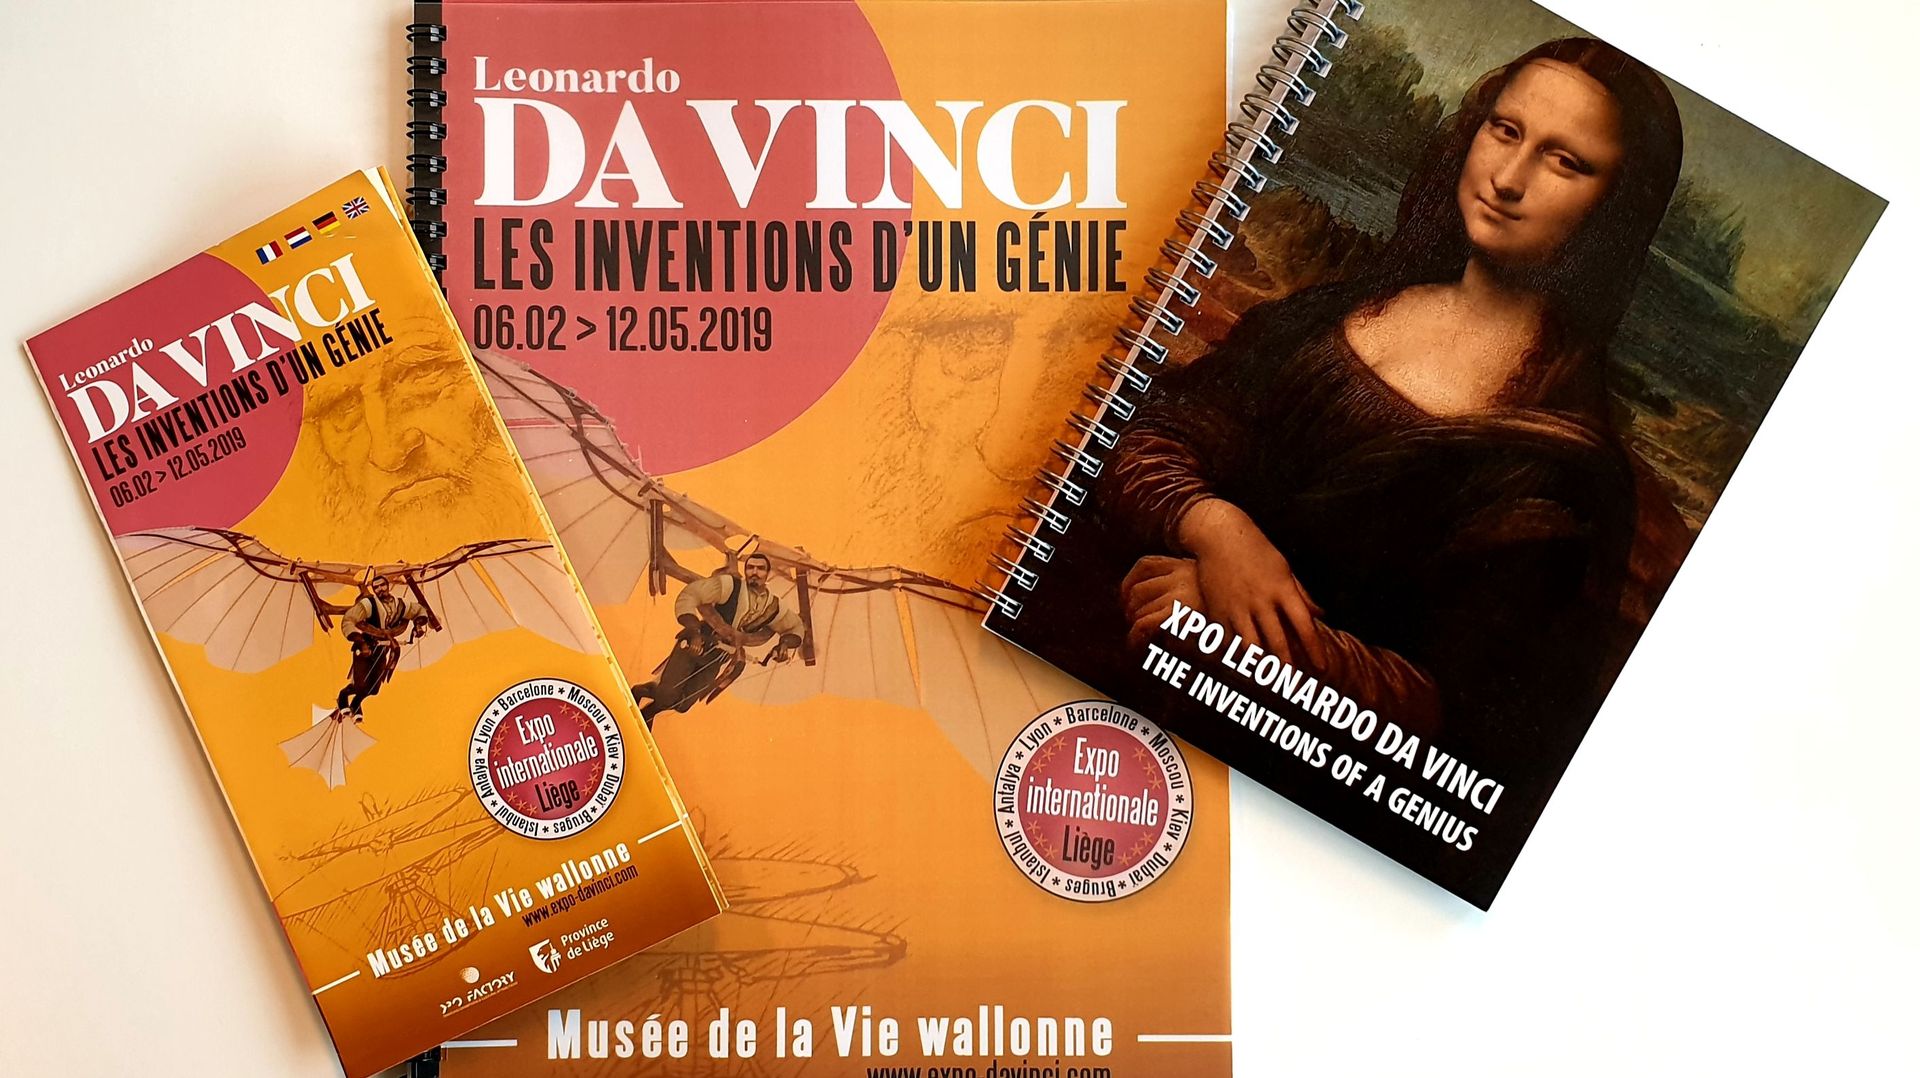 "LEONARDO DA VINCI, les inventions d'un Génie" : Une expo à ne pas manquer à Liège ! 